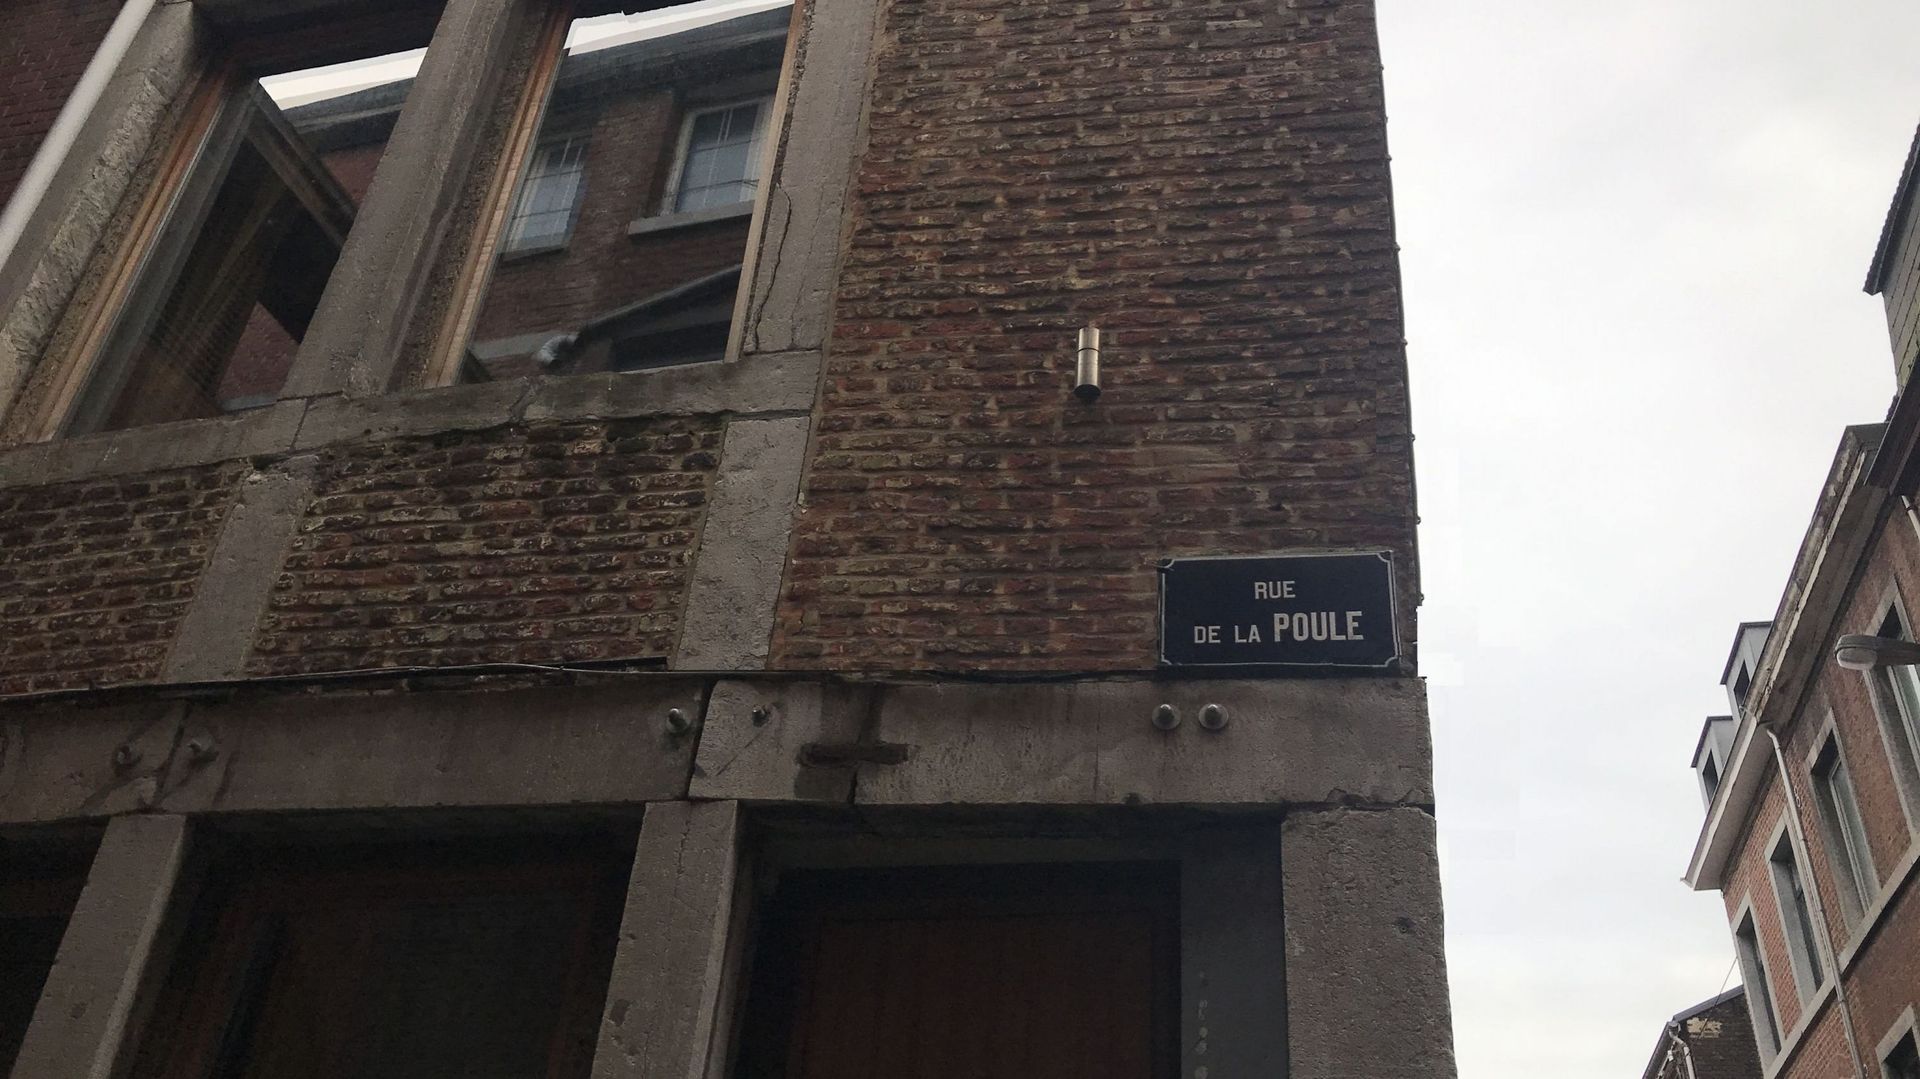 La rue de la poule, le bien nommée, haut lieu de la prostitution liégeoise jusqu'au siècle dernier